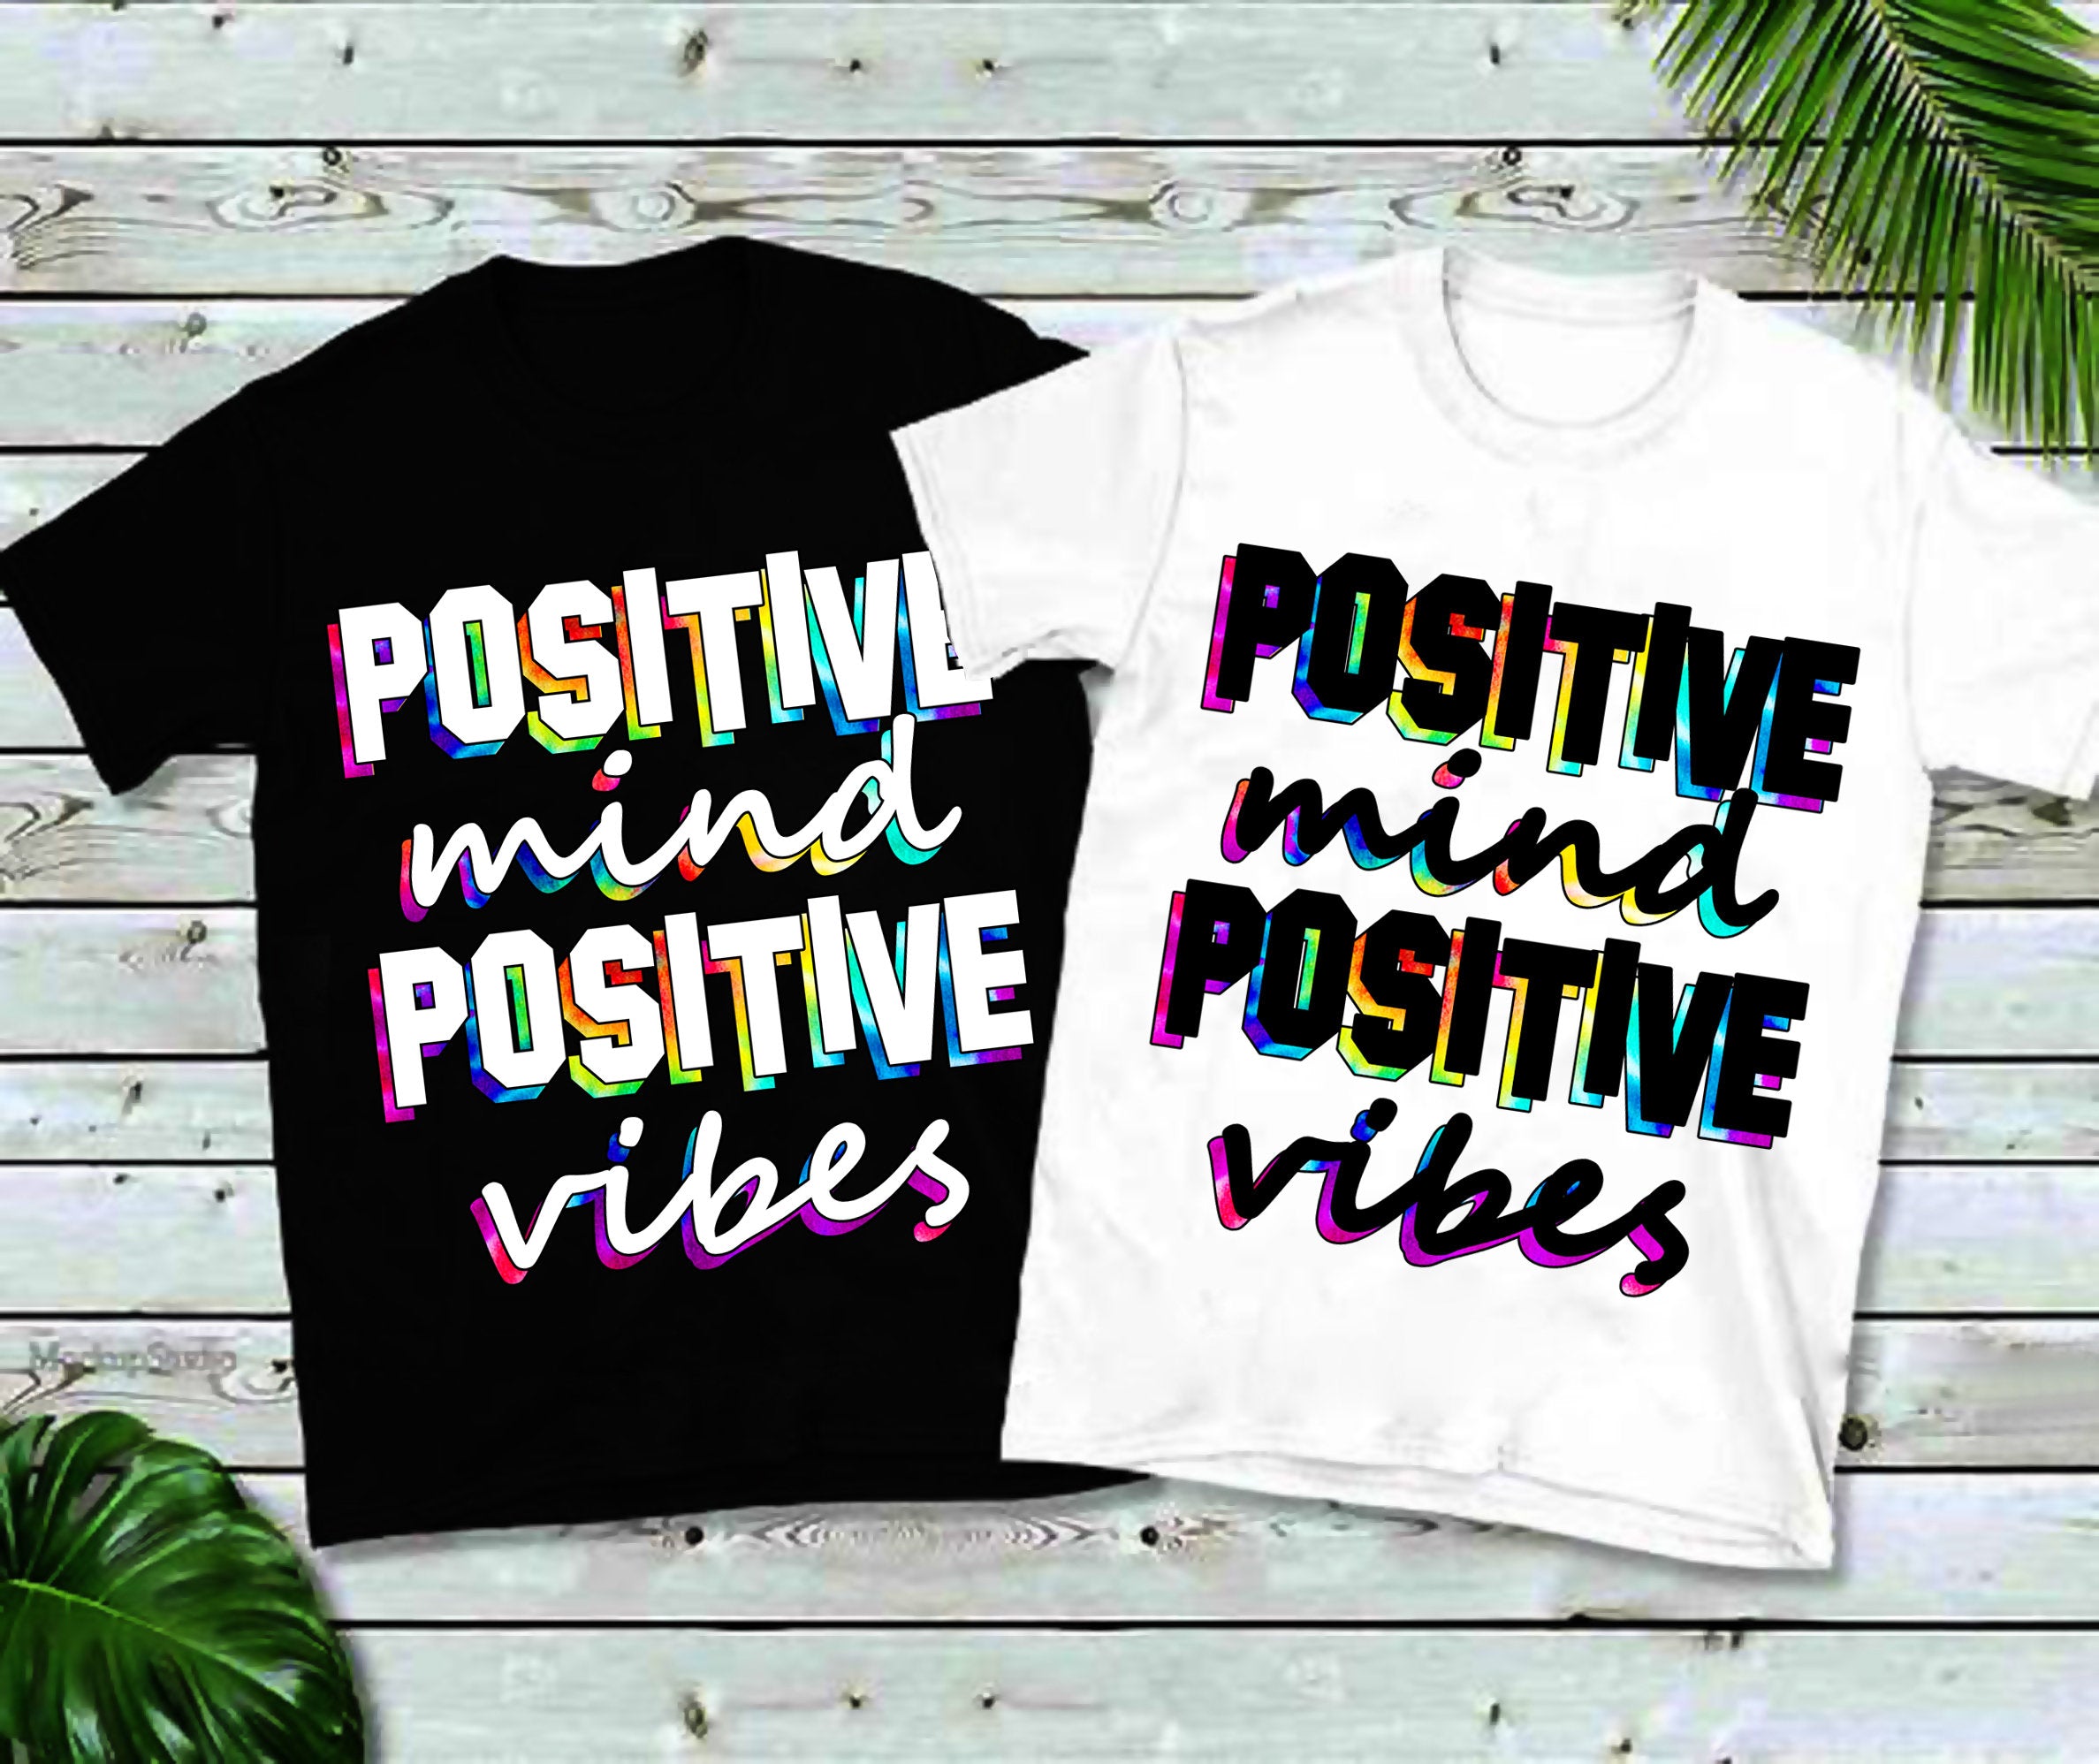 Pozitívna myseľ Pozitívne vibrácie | Tričká s farebnou potlačou,Tričko na jogu, Tričko pre mužov, Tričko pre ženy, Joga, Motivačné - plusminusco.com